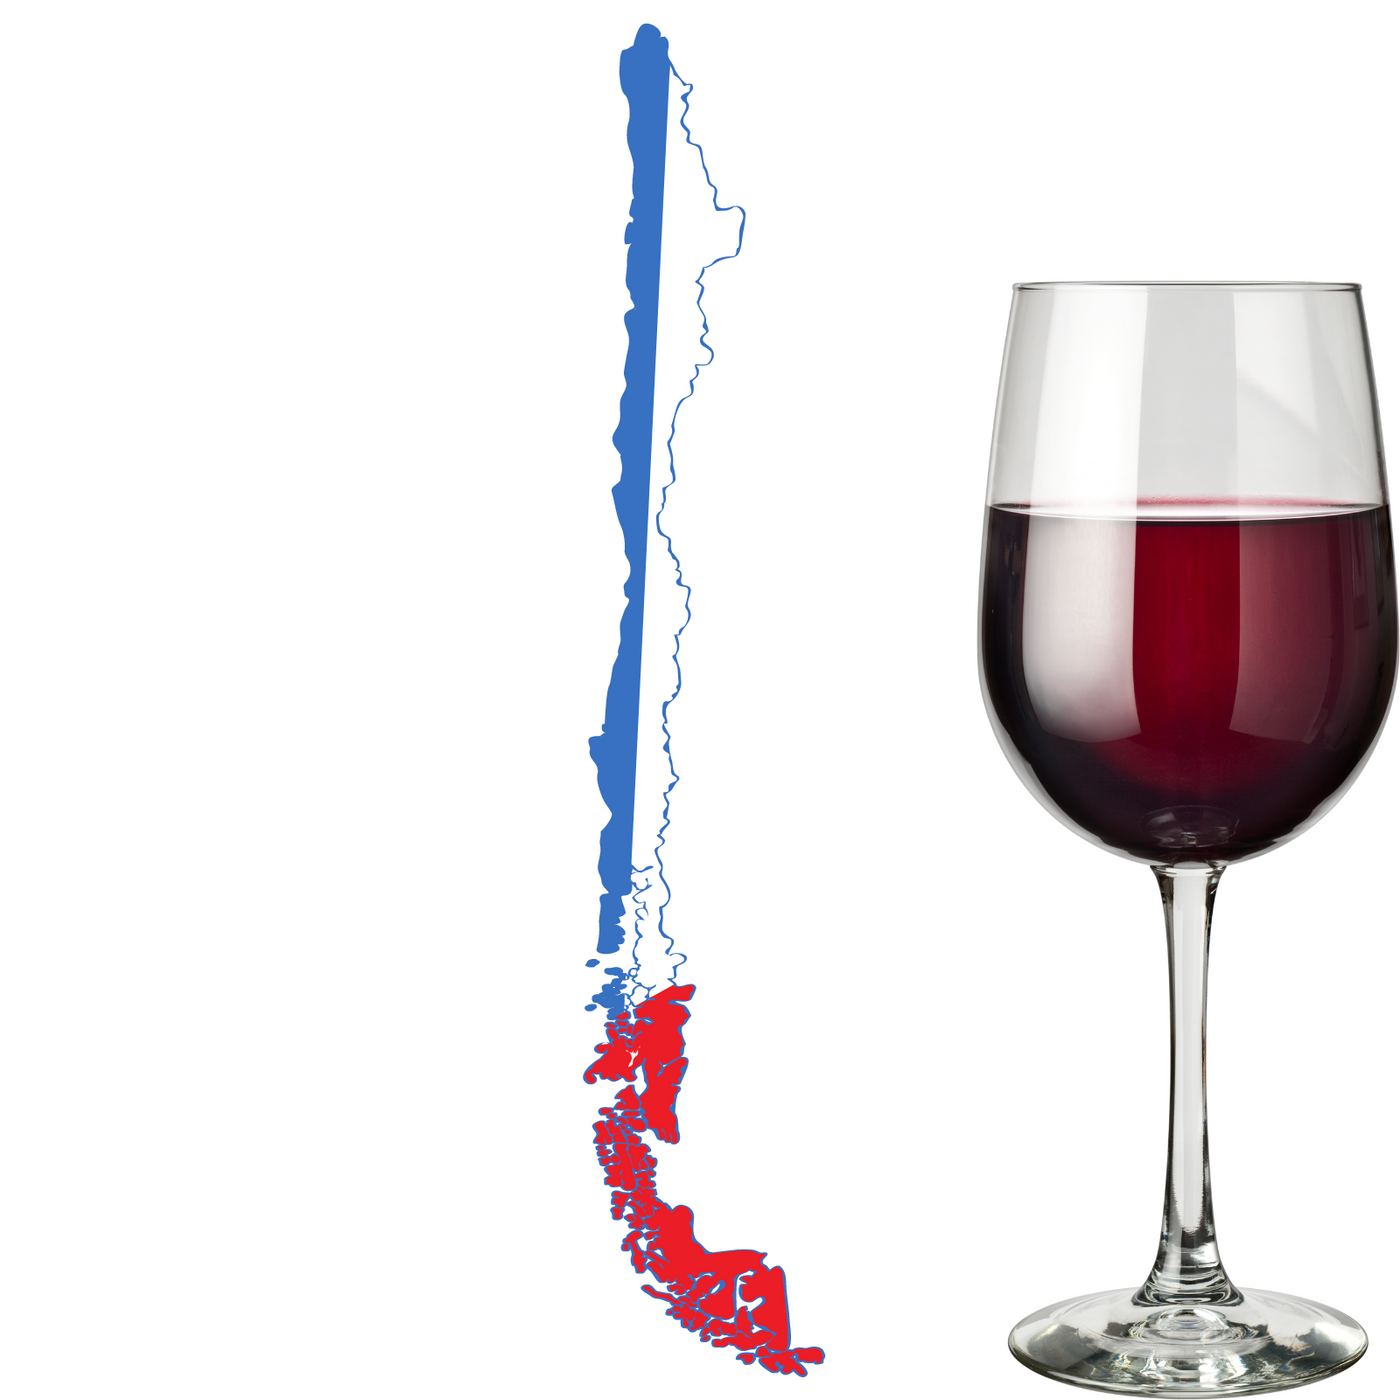 Chileense Rode wijn bestellen bij Flesjewijn.com